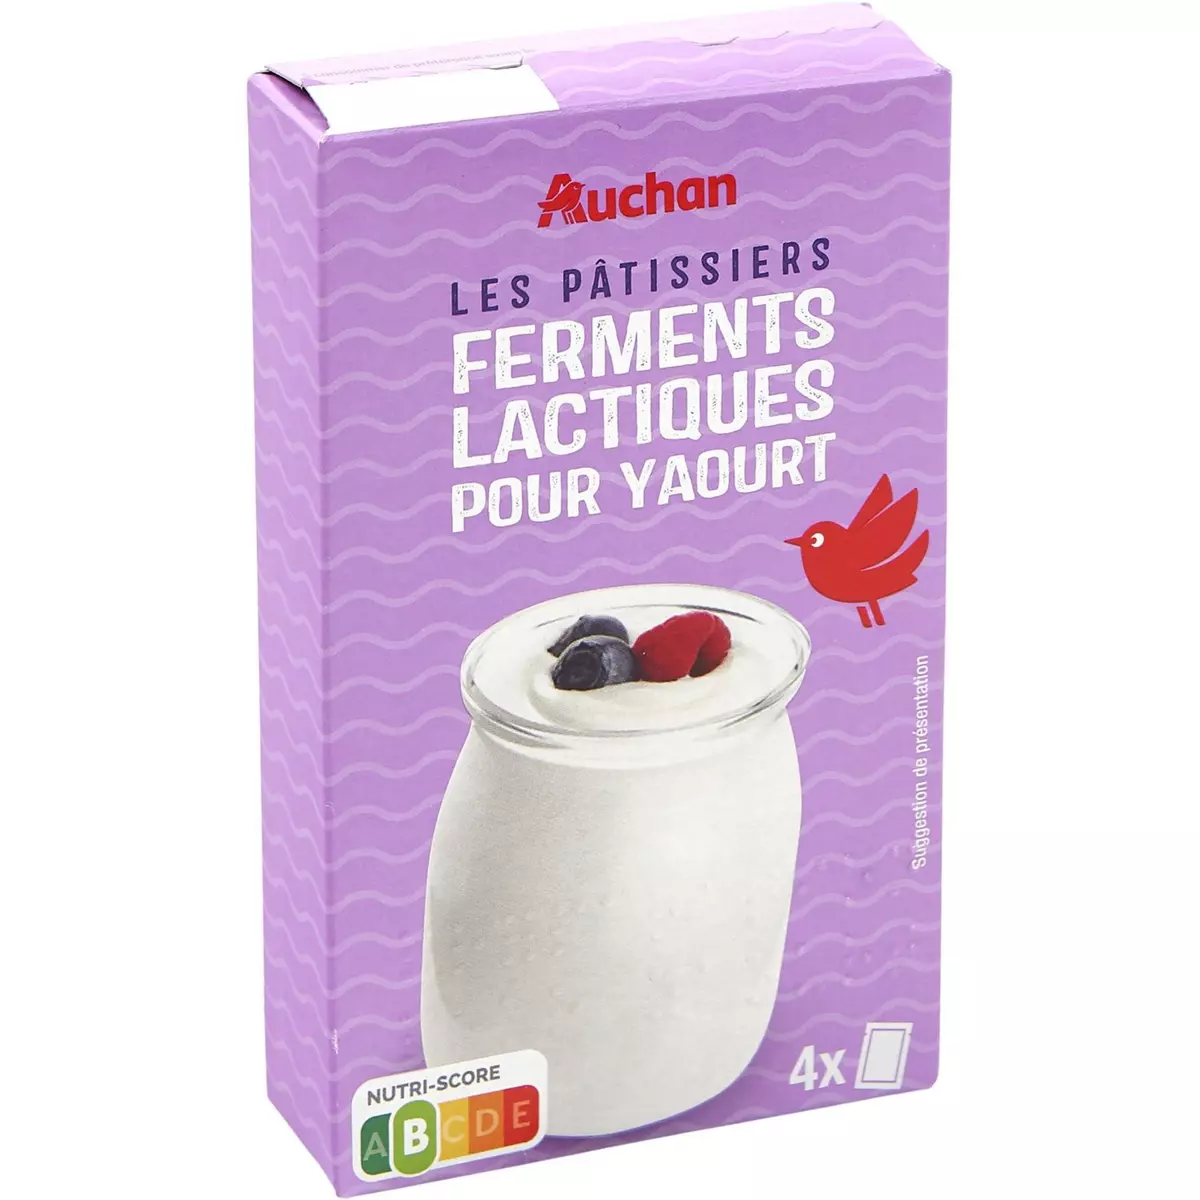 AUCHAN Ferments lactiques pour yaourt 4 sachets 48g